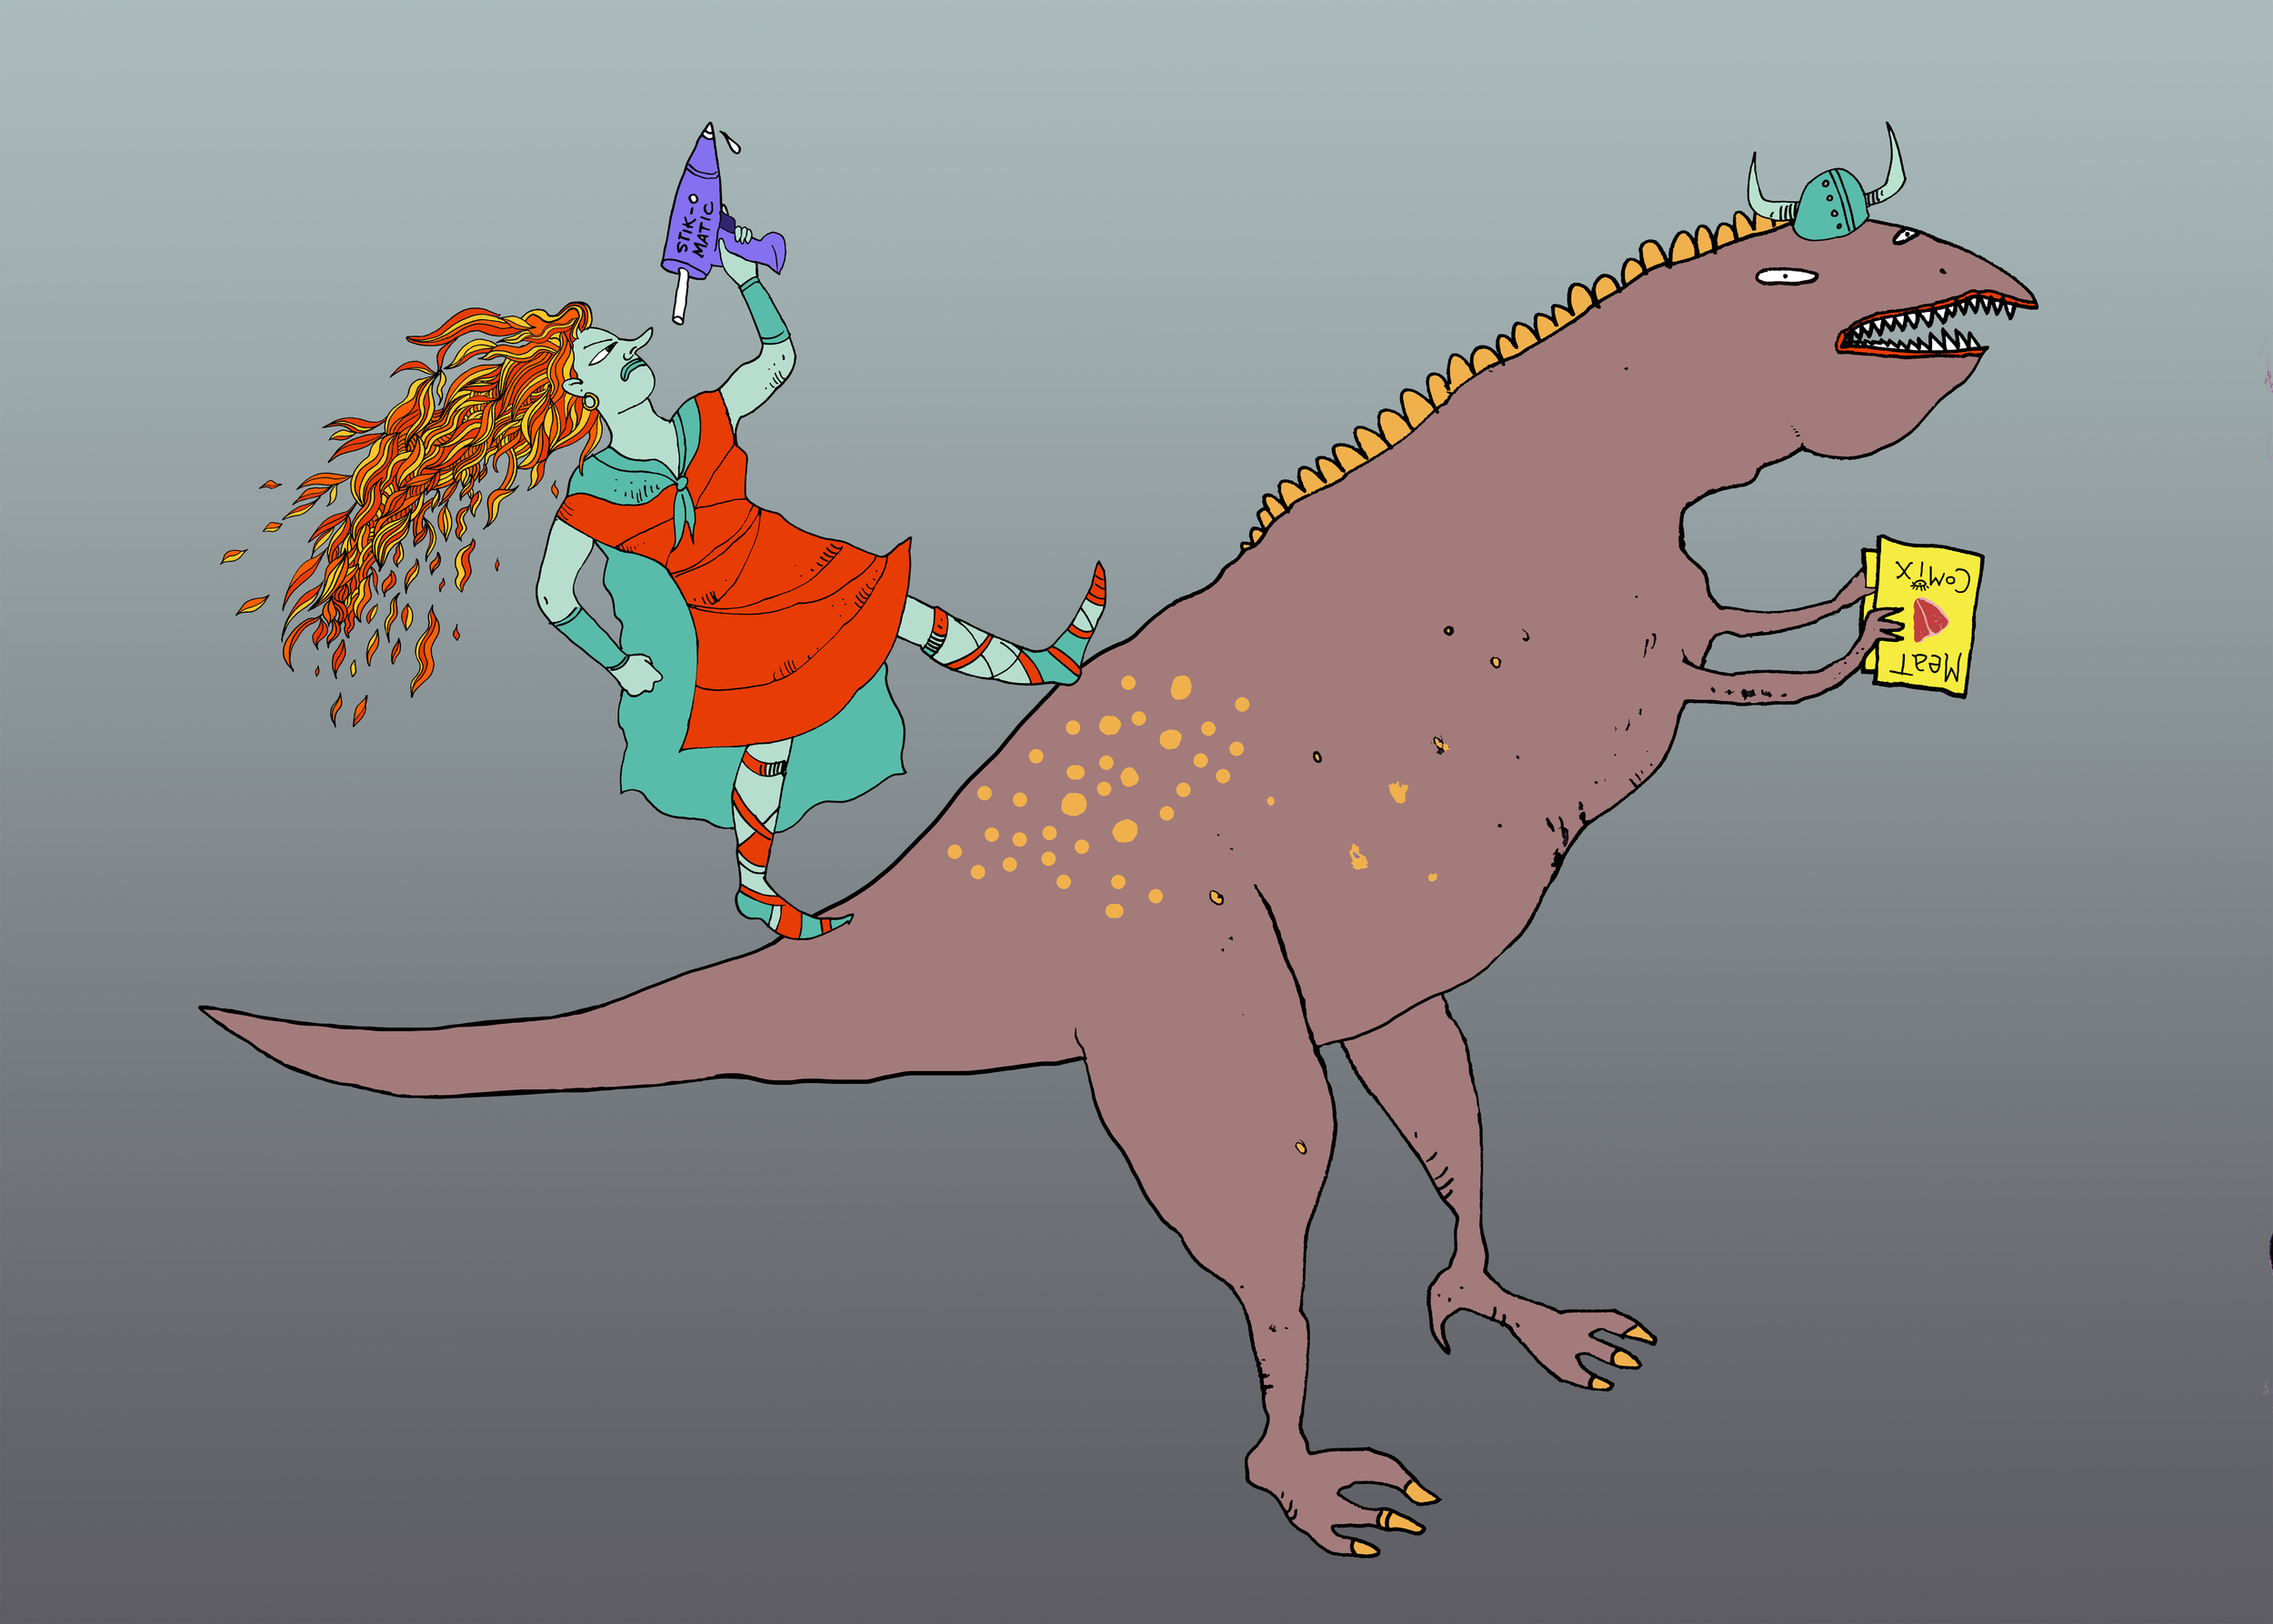 Valkyrie & Dinosaur, MegaMania! poster illustration, 2015